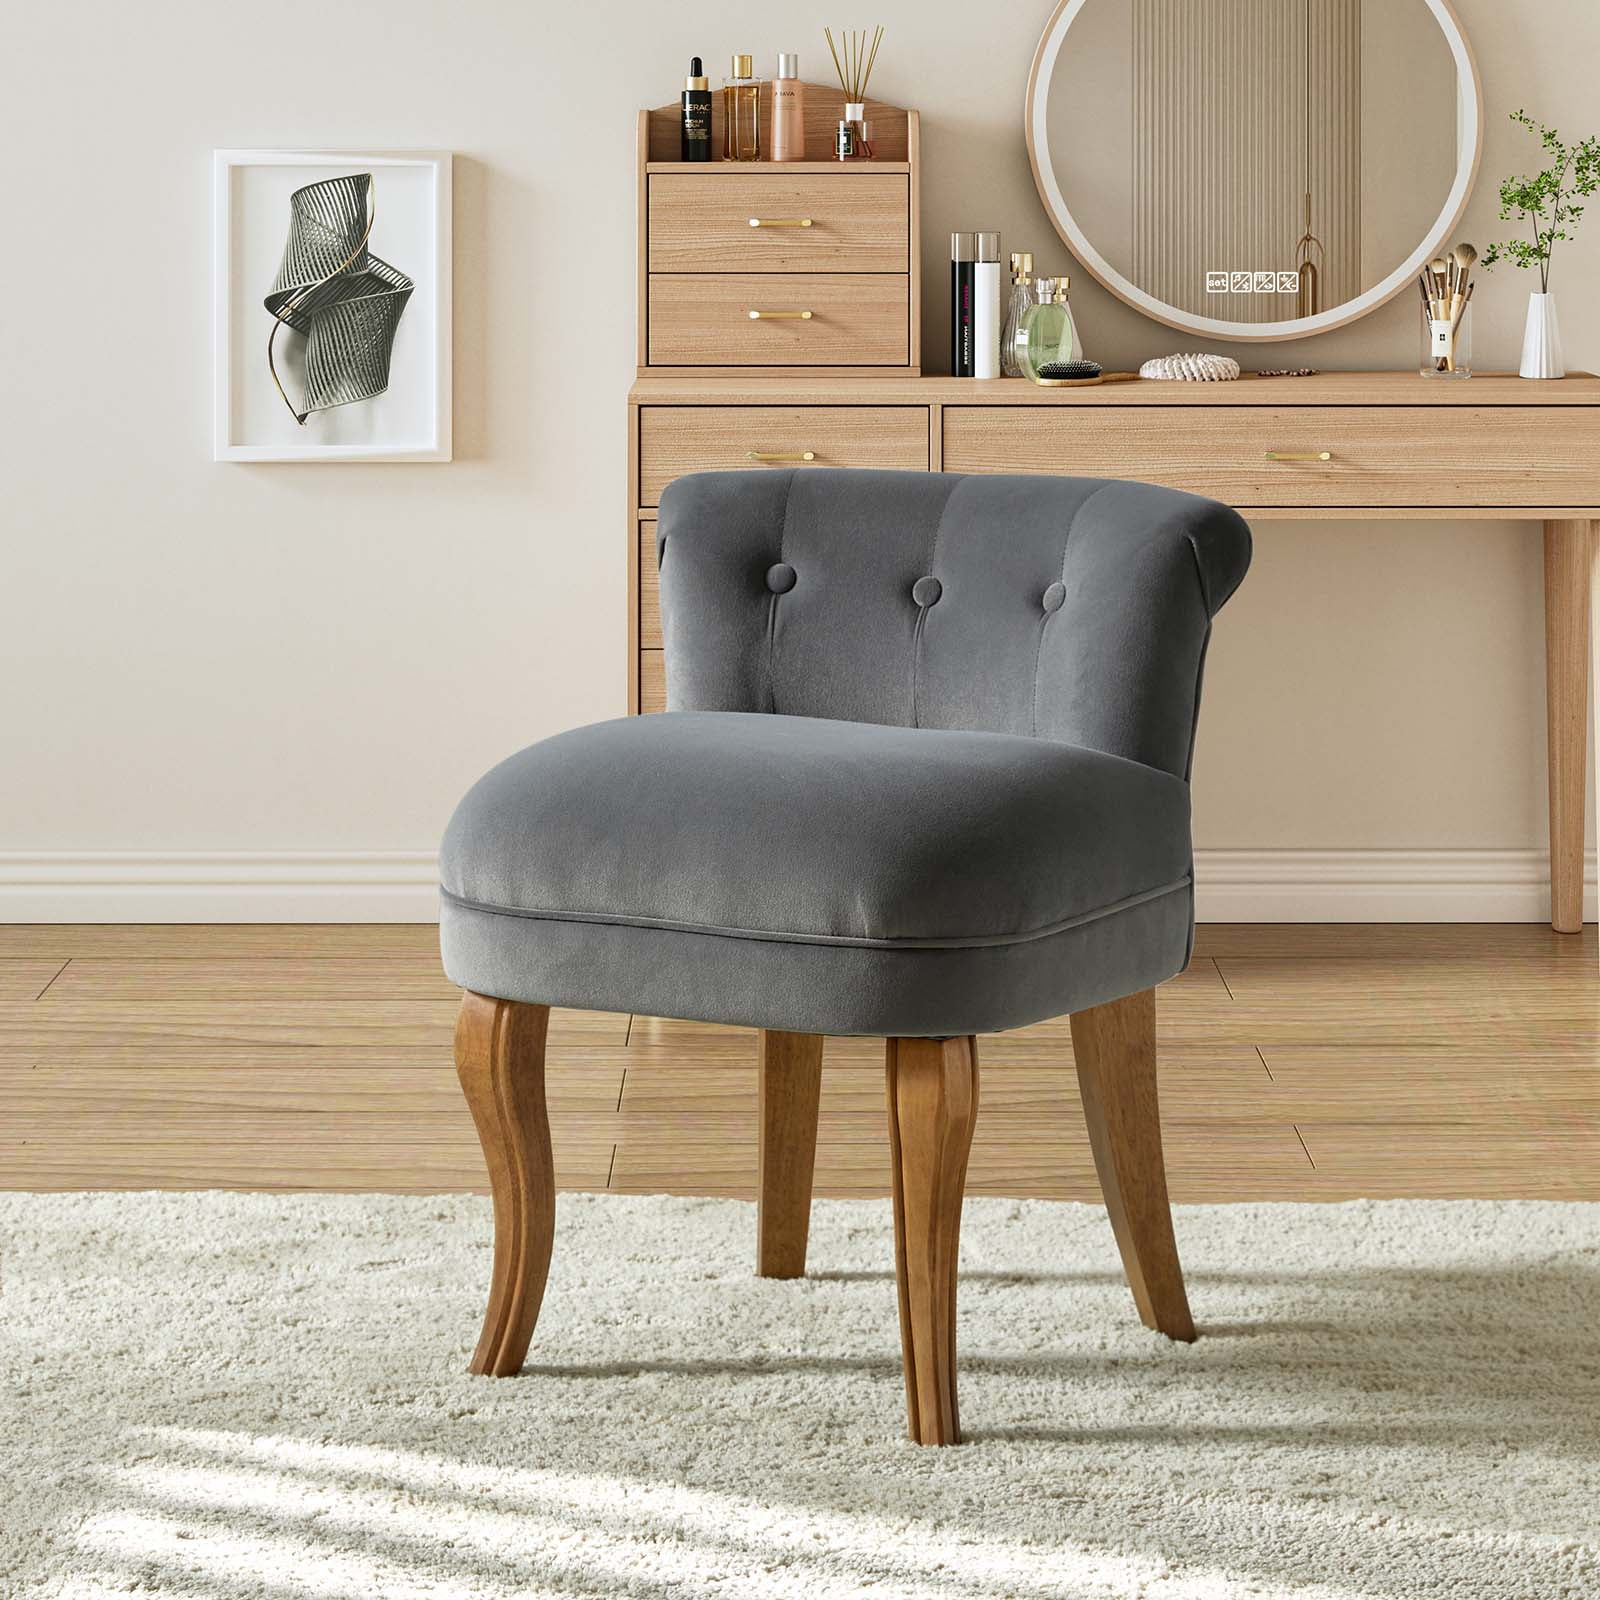 Dressing Table Chair | Dressing table chair buy online